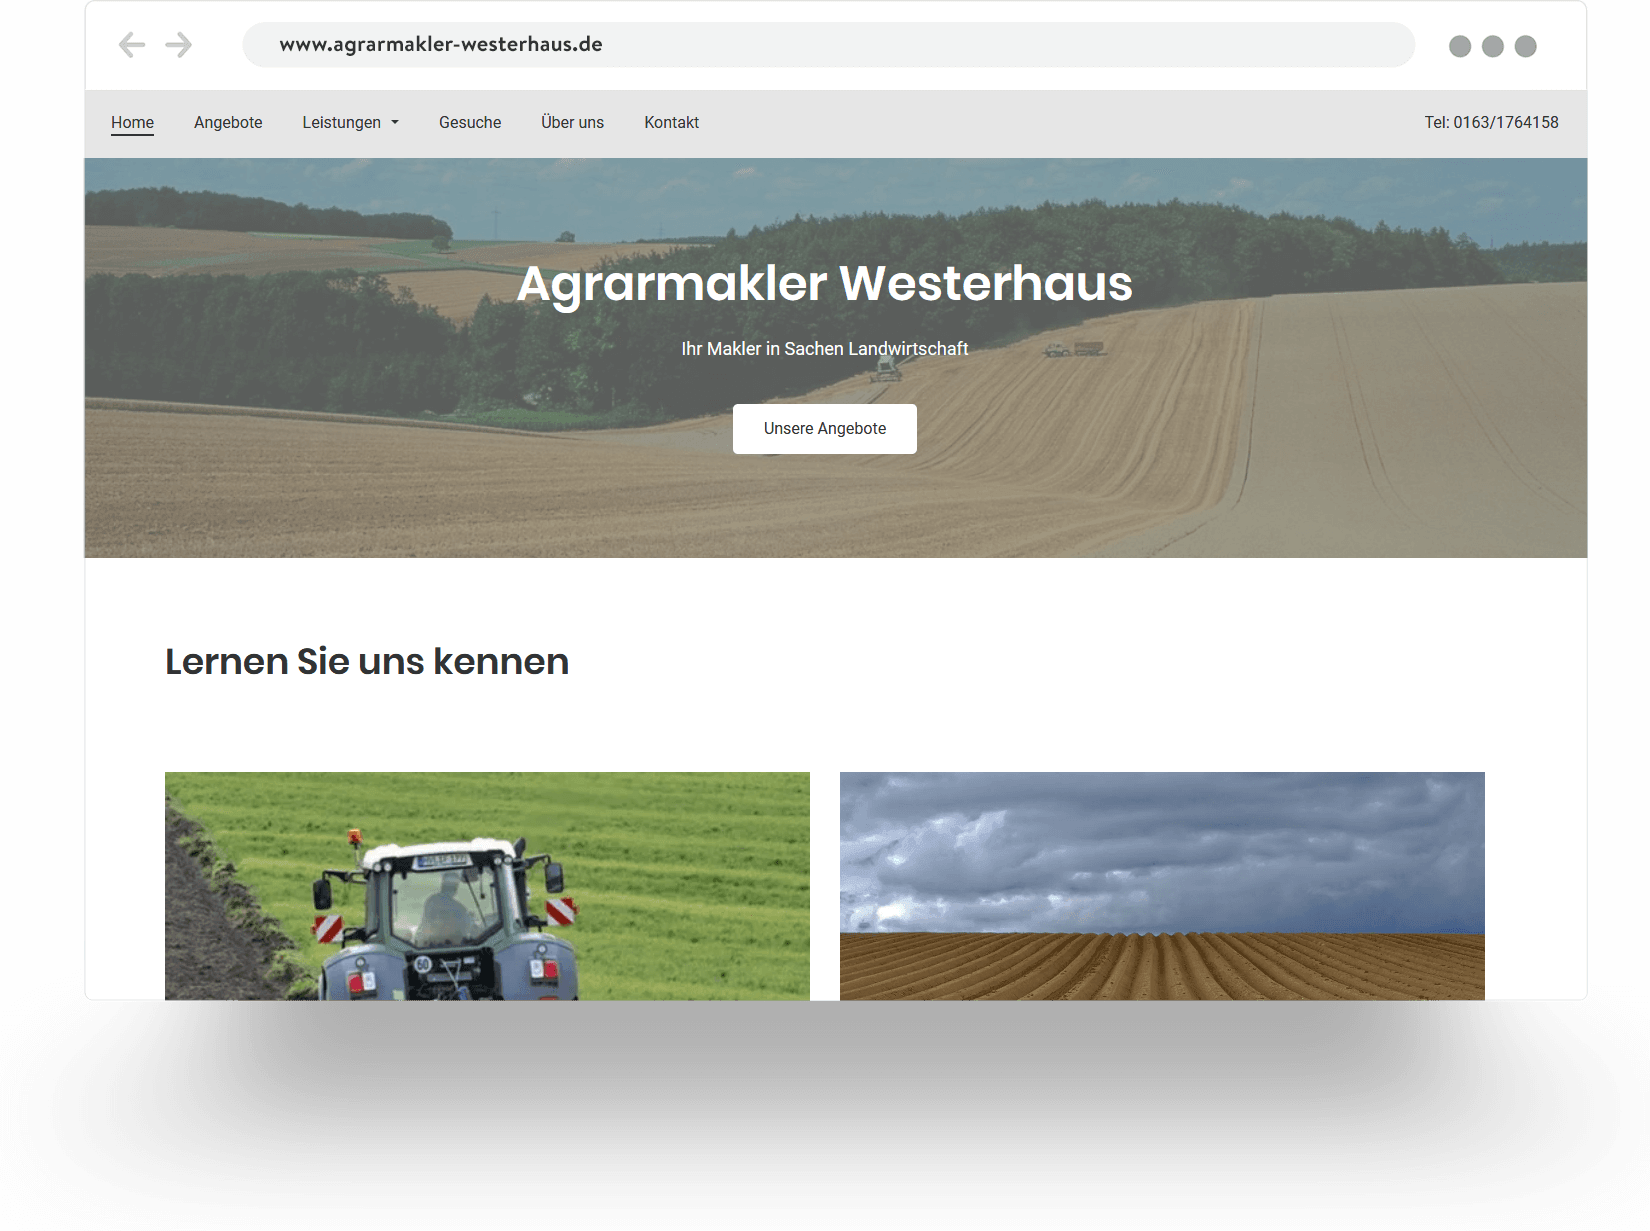 Beispiel für eine Agrarmakler-Website, die mit Jimdo erstellt wurde